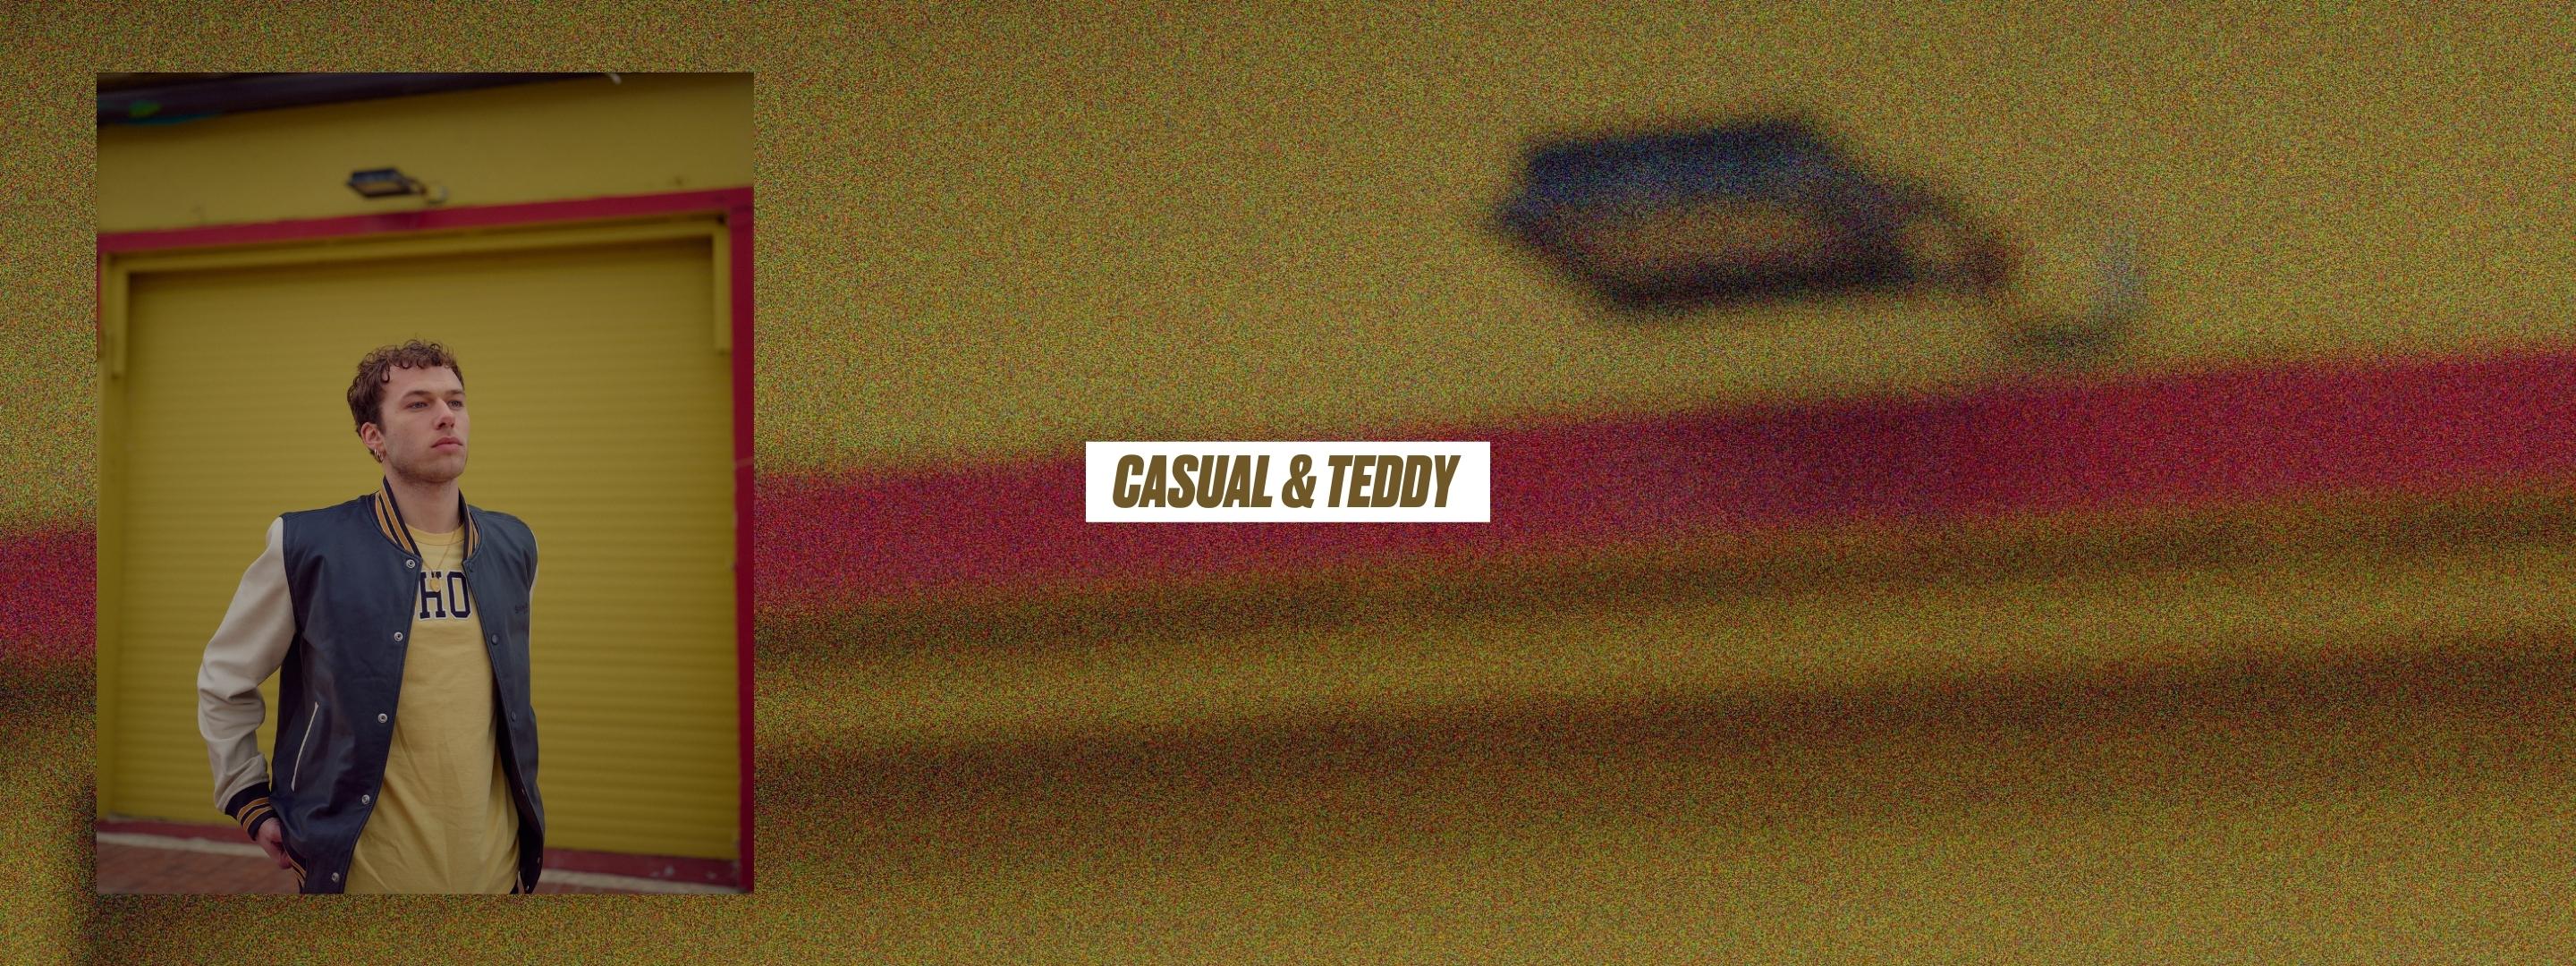 Casual & Teddy